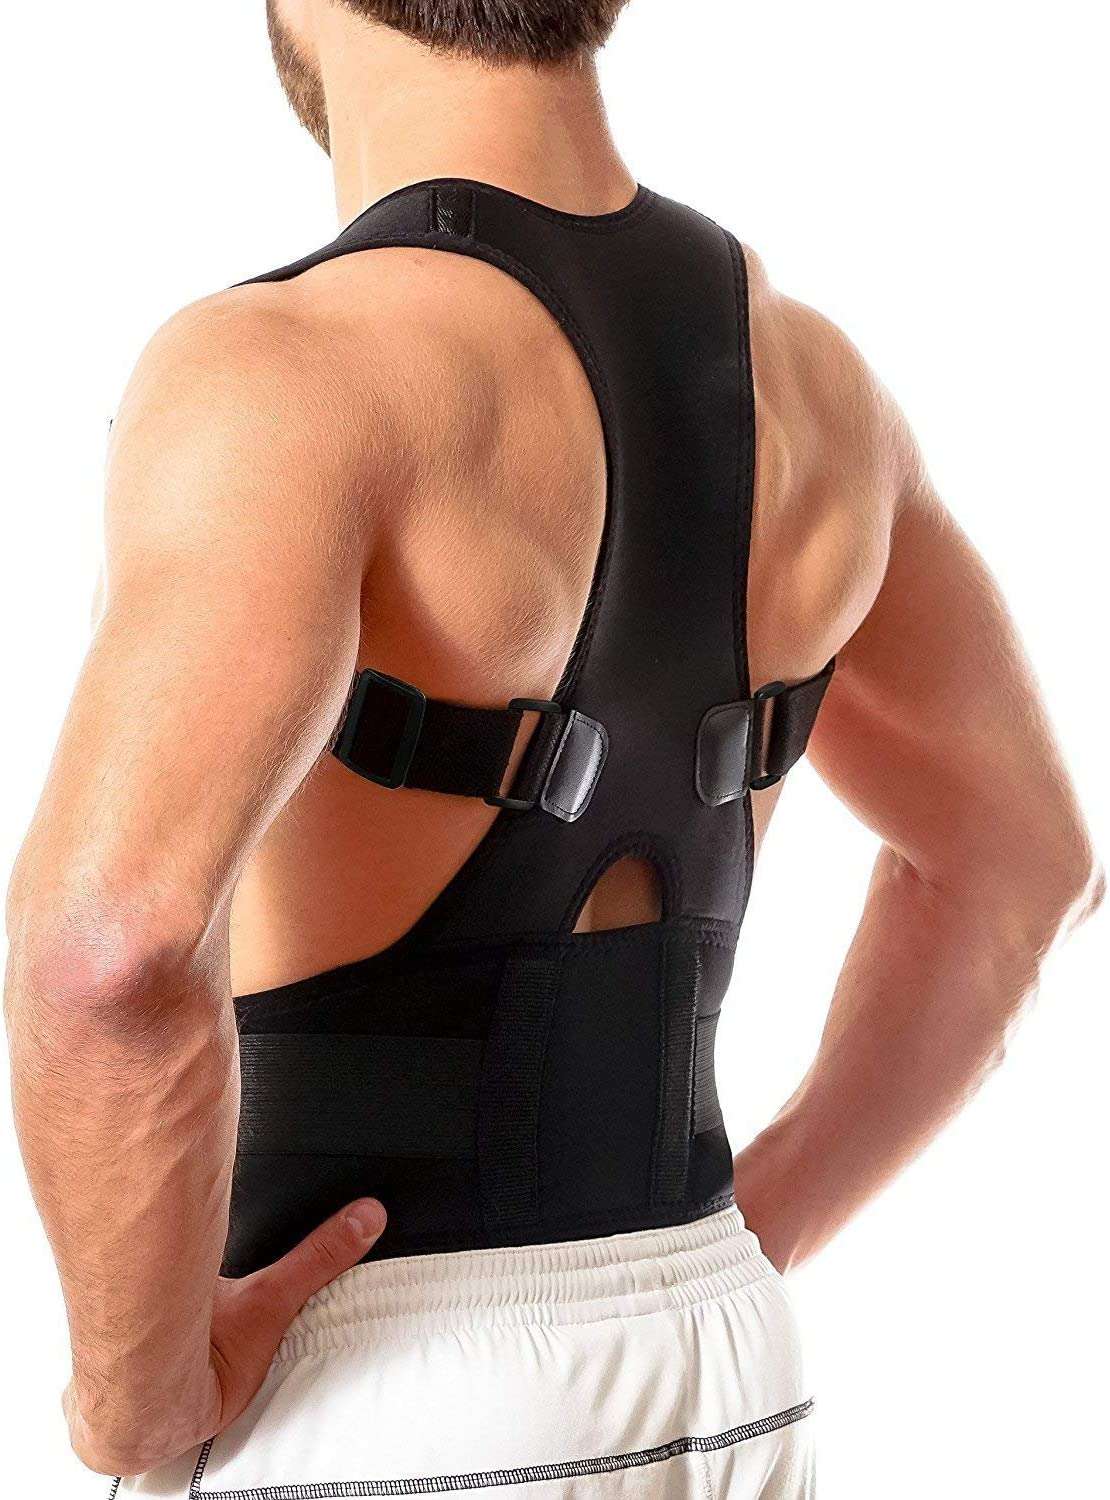 Magnetic Posture Support Corrector Back Brace Belt